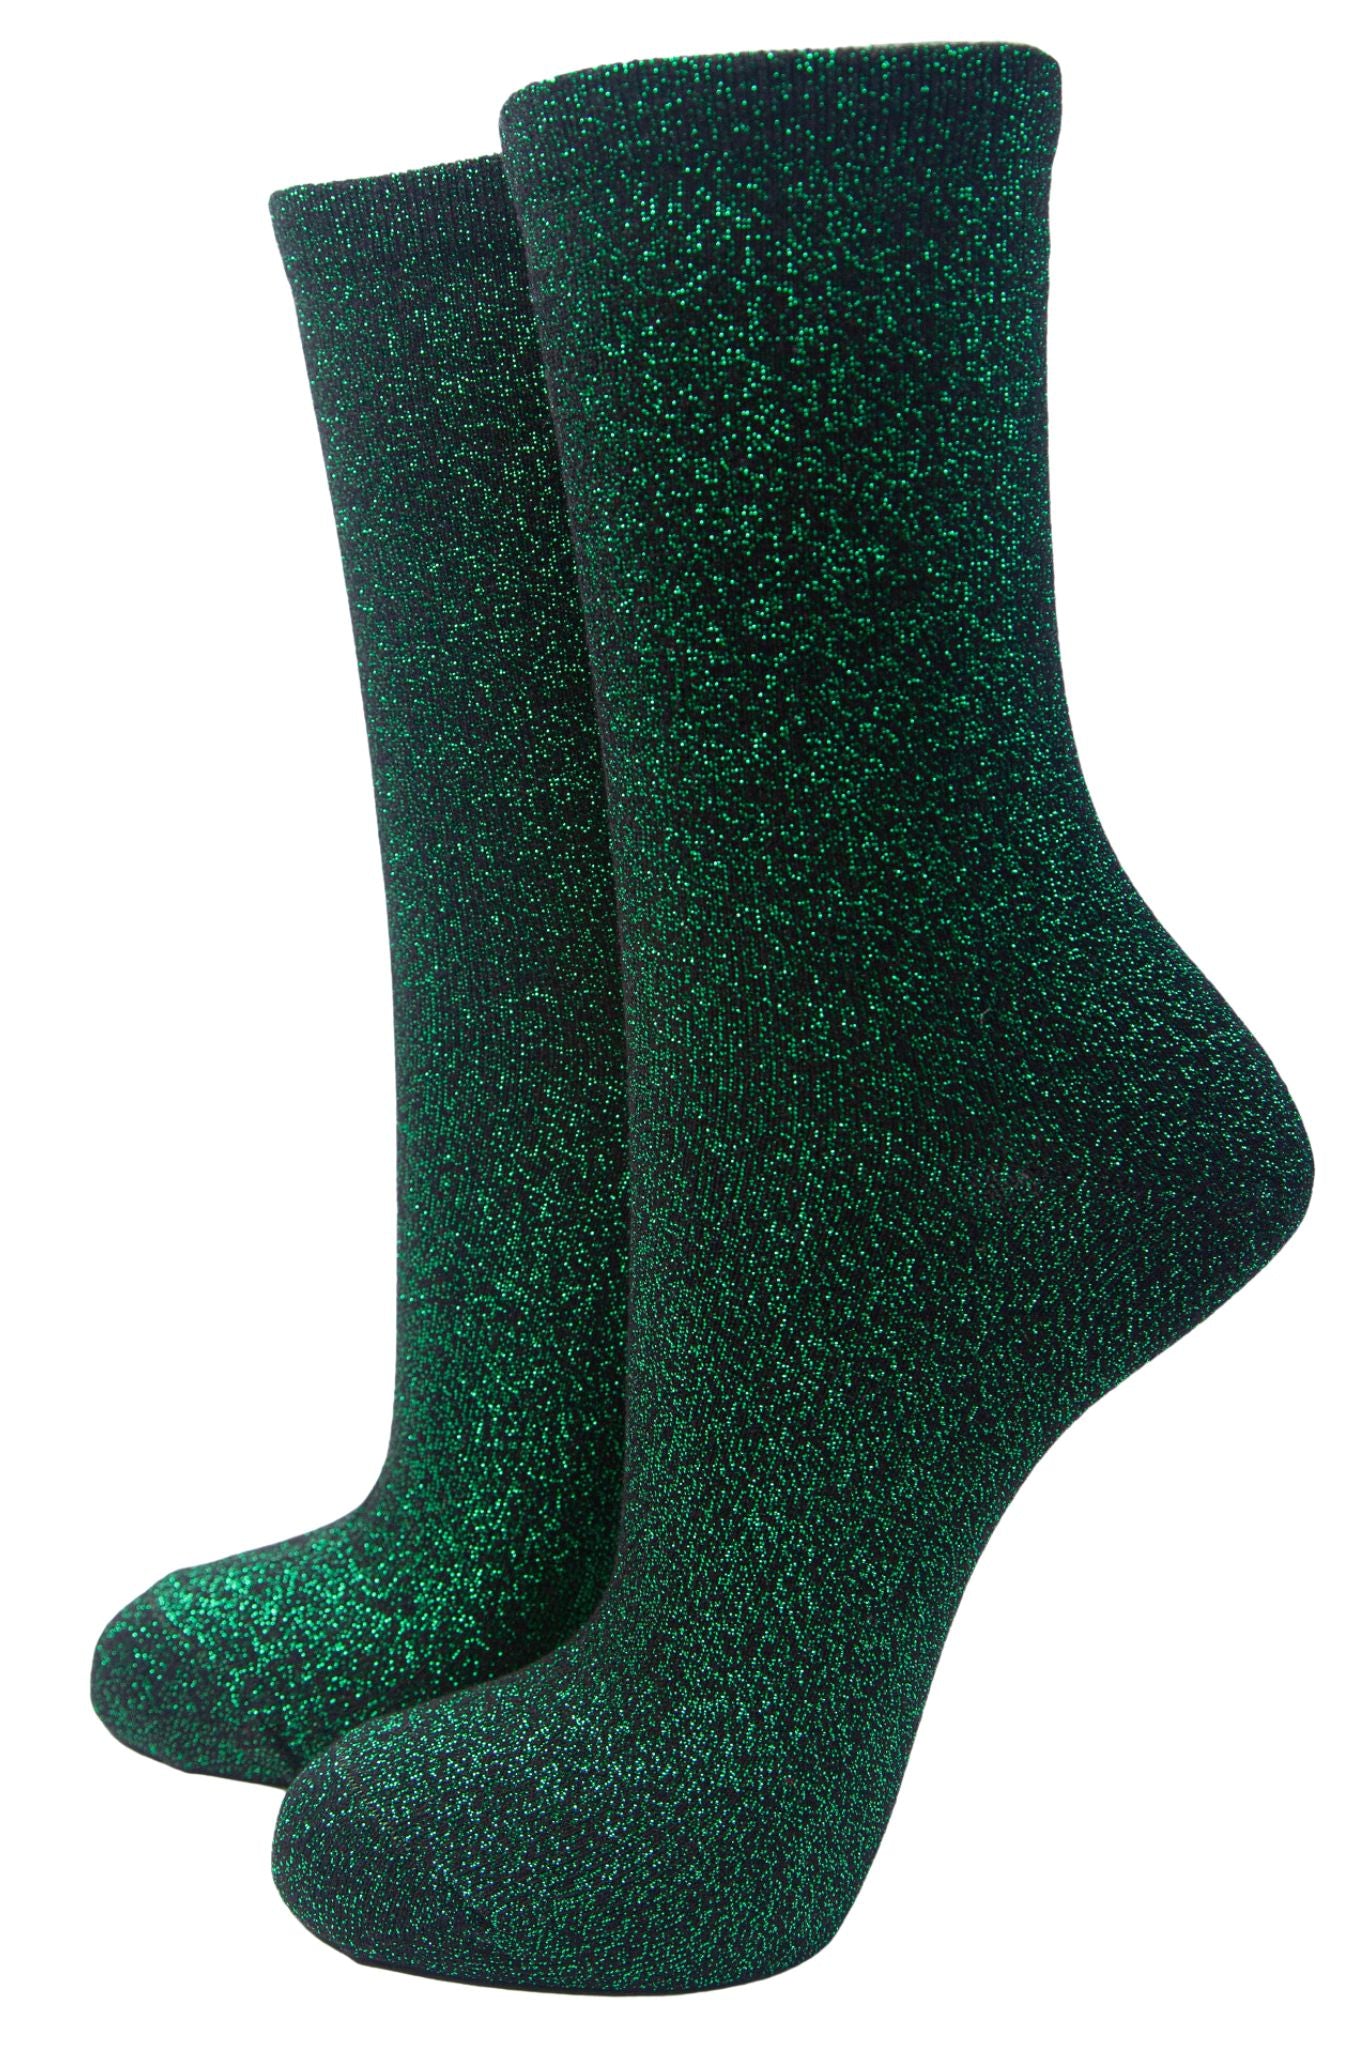 Women's Glitter Ankle Socks Sparkly Shimmer Black Green